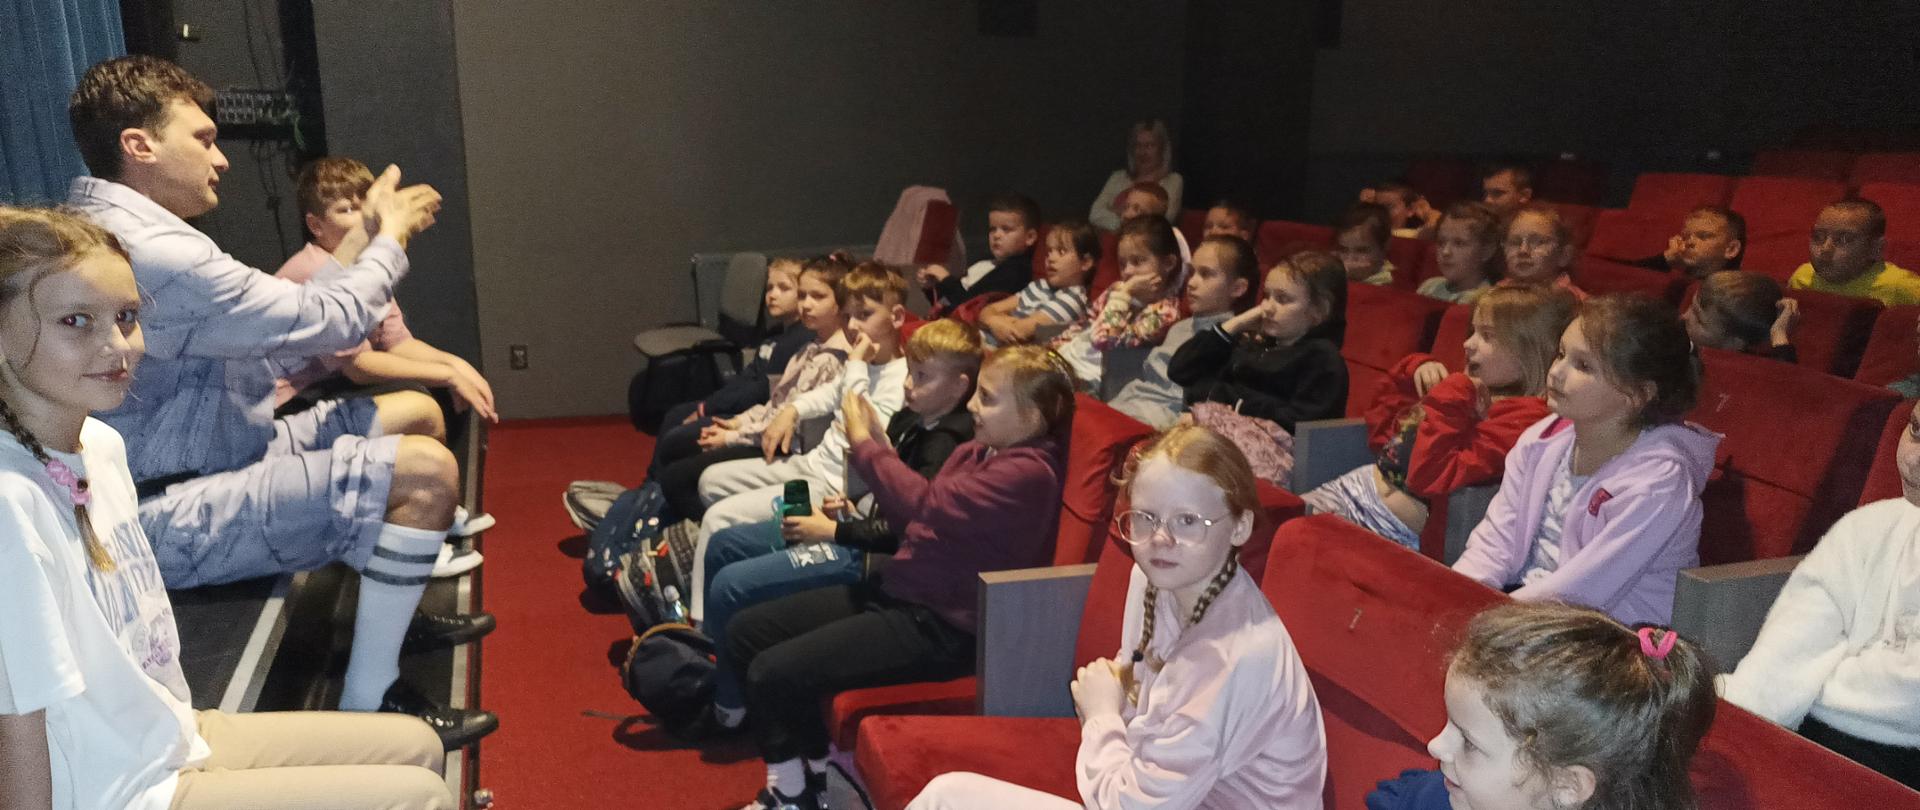 Dzieci siedzące na widowni na czerwonych fotelach. Przed nimi na końcu sceny siedzi mężczyzna unoszący prawą rękę przed siebie i dwie dziewczyny.